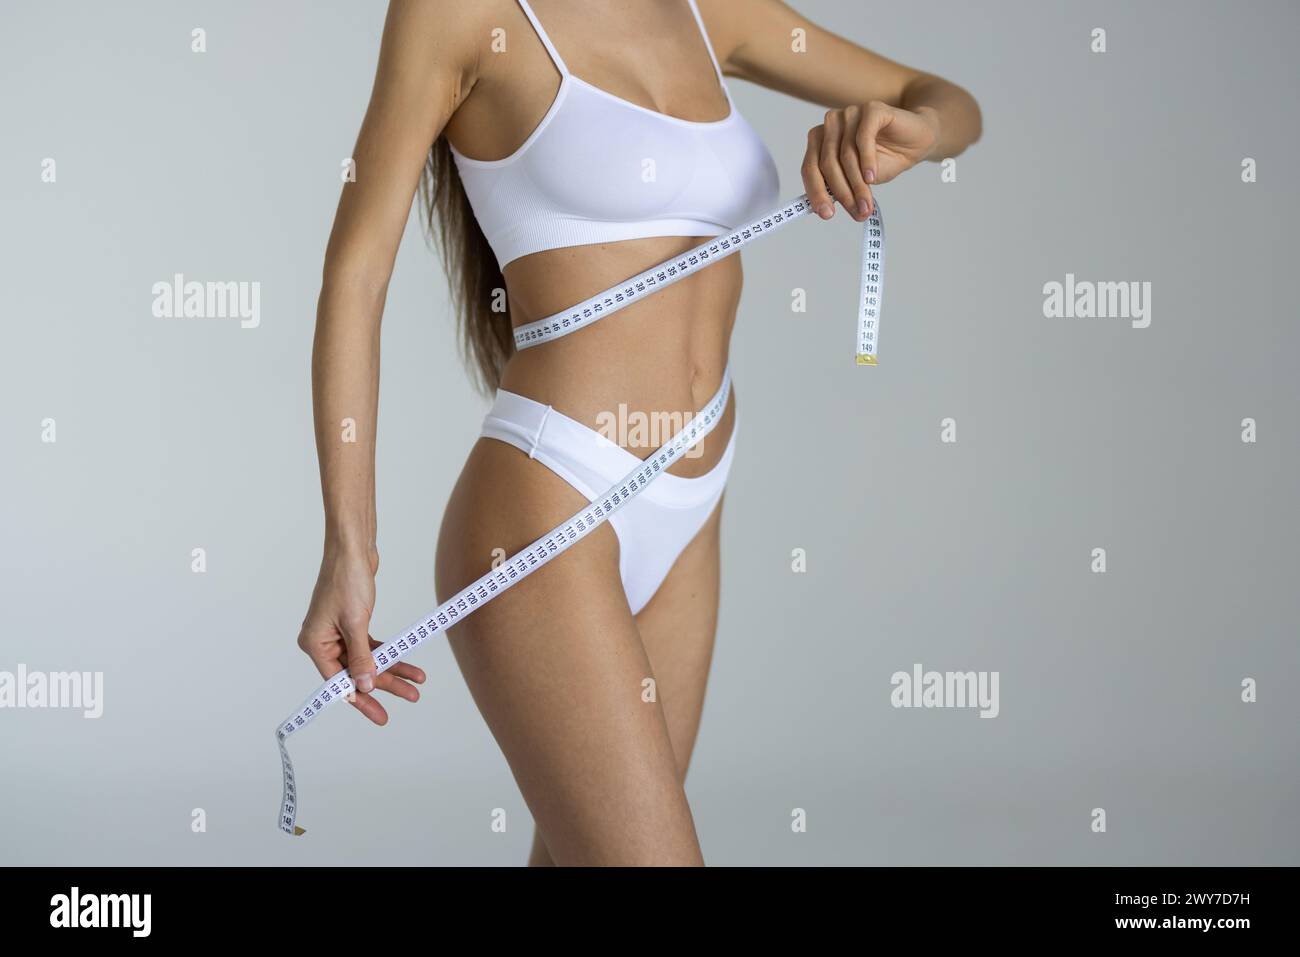 La taille minuscule est intemporelle. Photo studio d'une femme méconnaissable mesurant sa taille sur un fond blanc. Banque D'Images